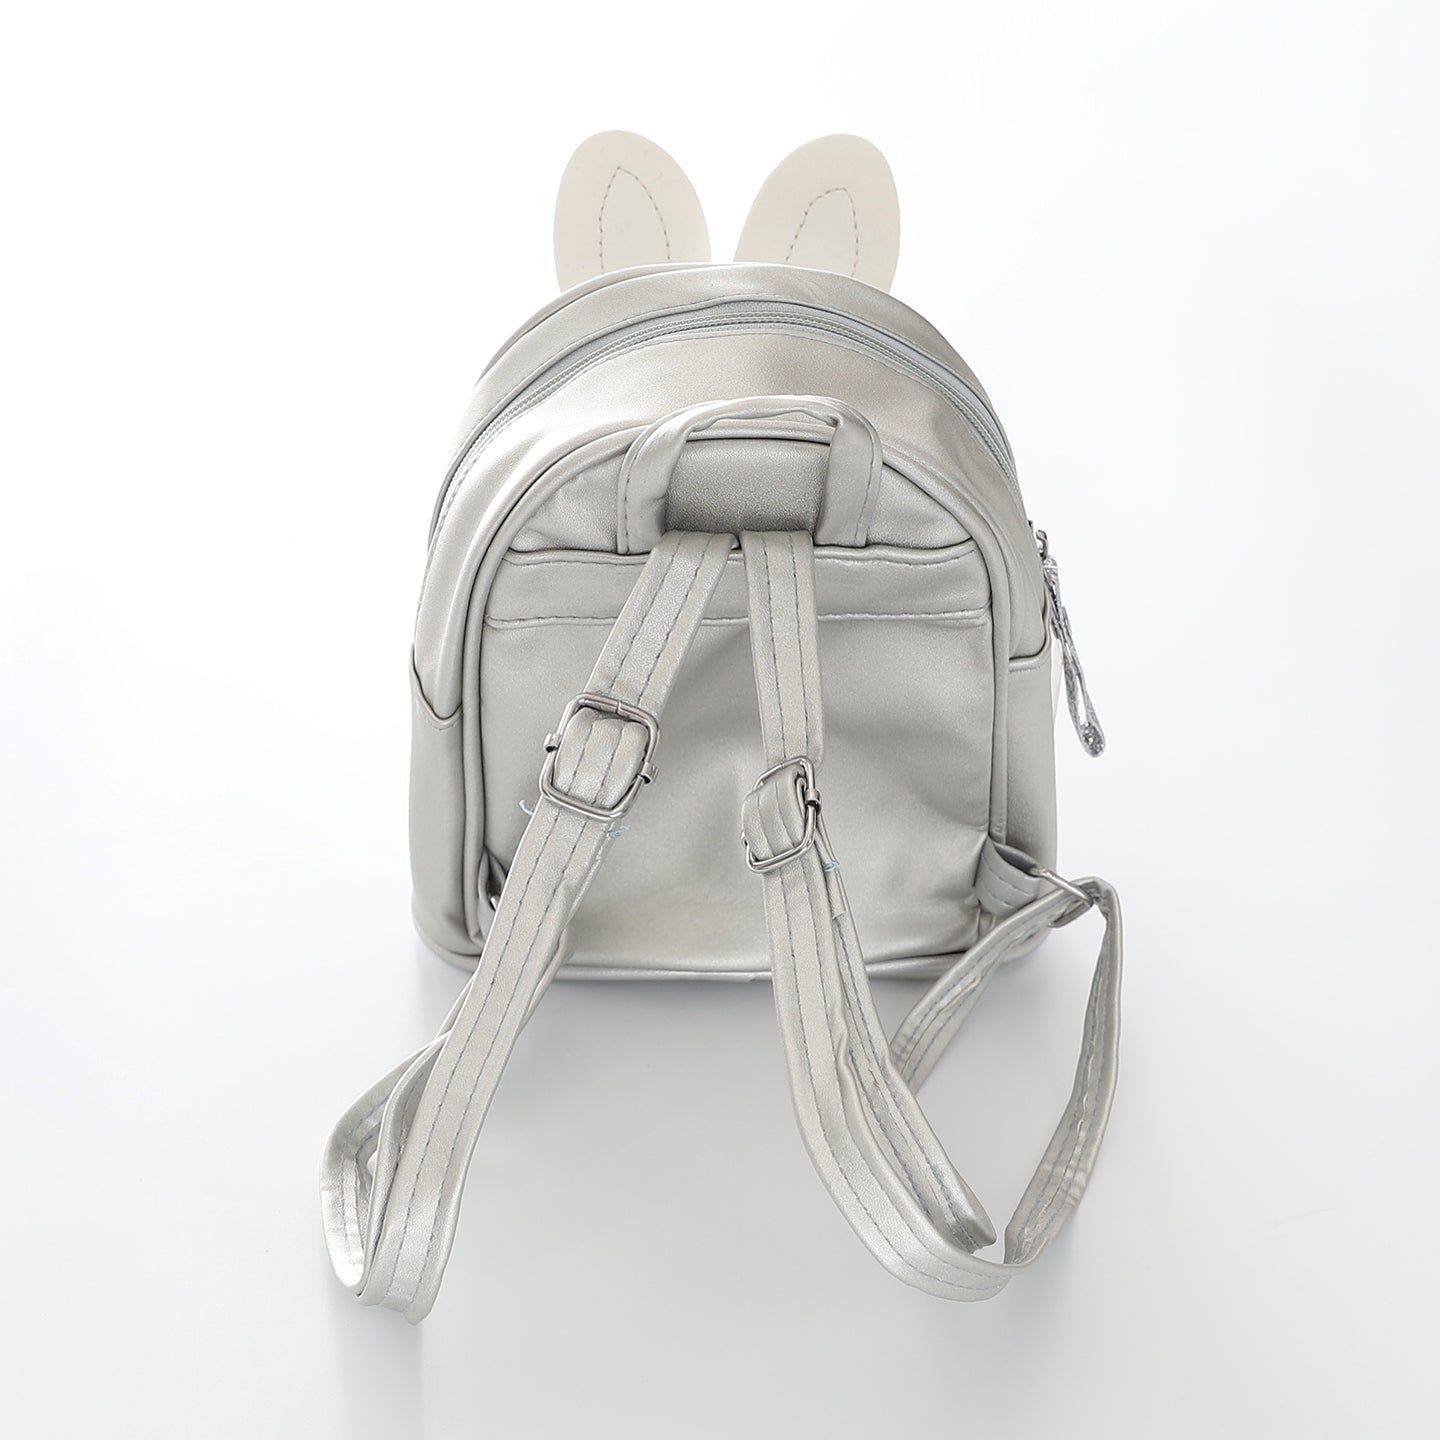 Kids Mini Silver Backpack